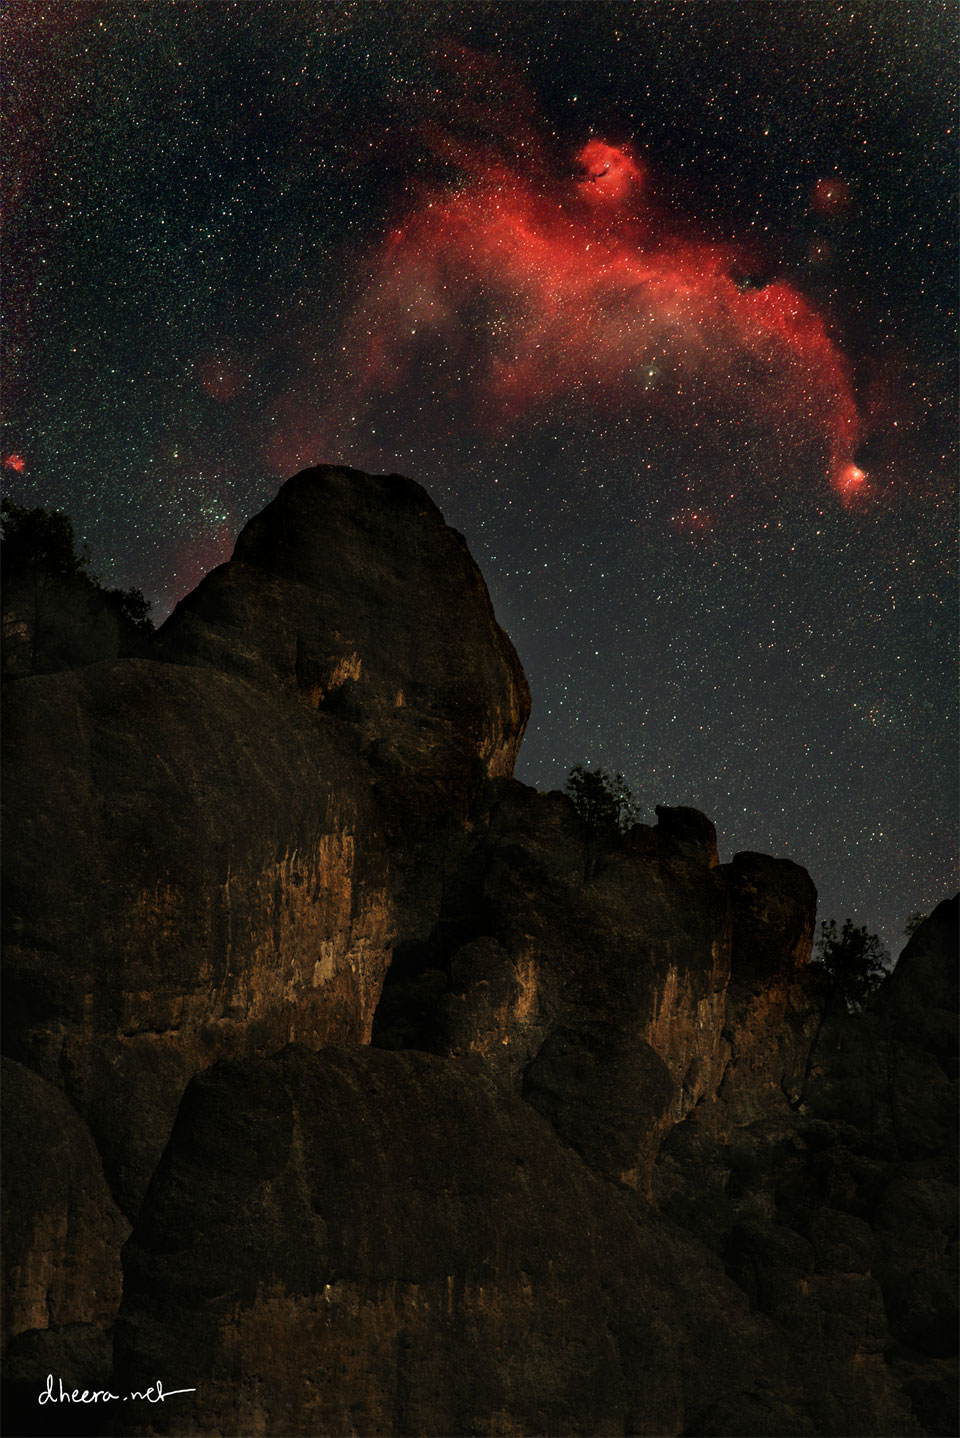 在一座岩石峰上方，可以看到黑暗星空中的红色星云。这个星云看起来像一只飞鸟。有关更多详细信息，请参阅说明。